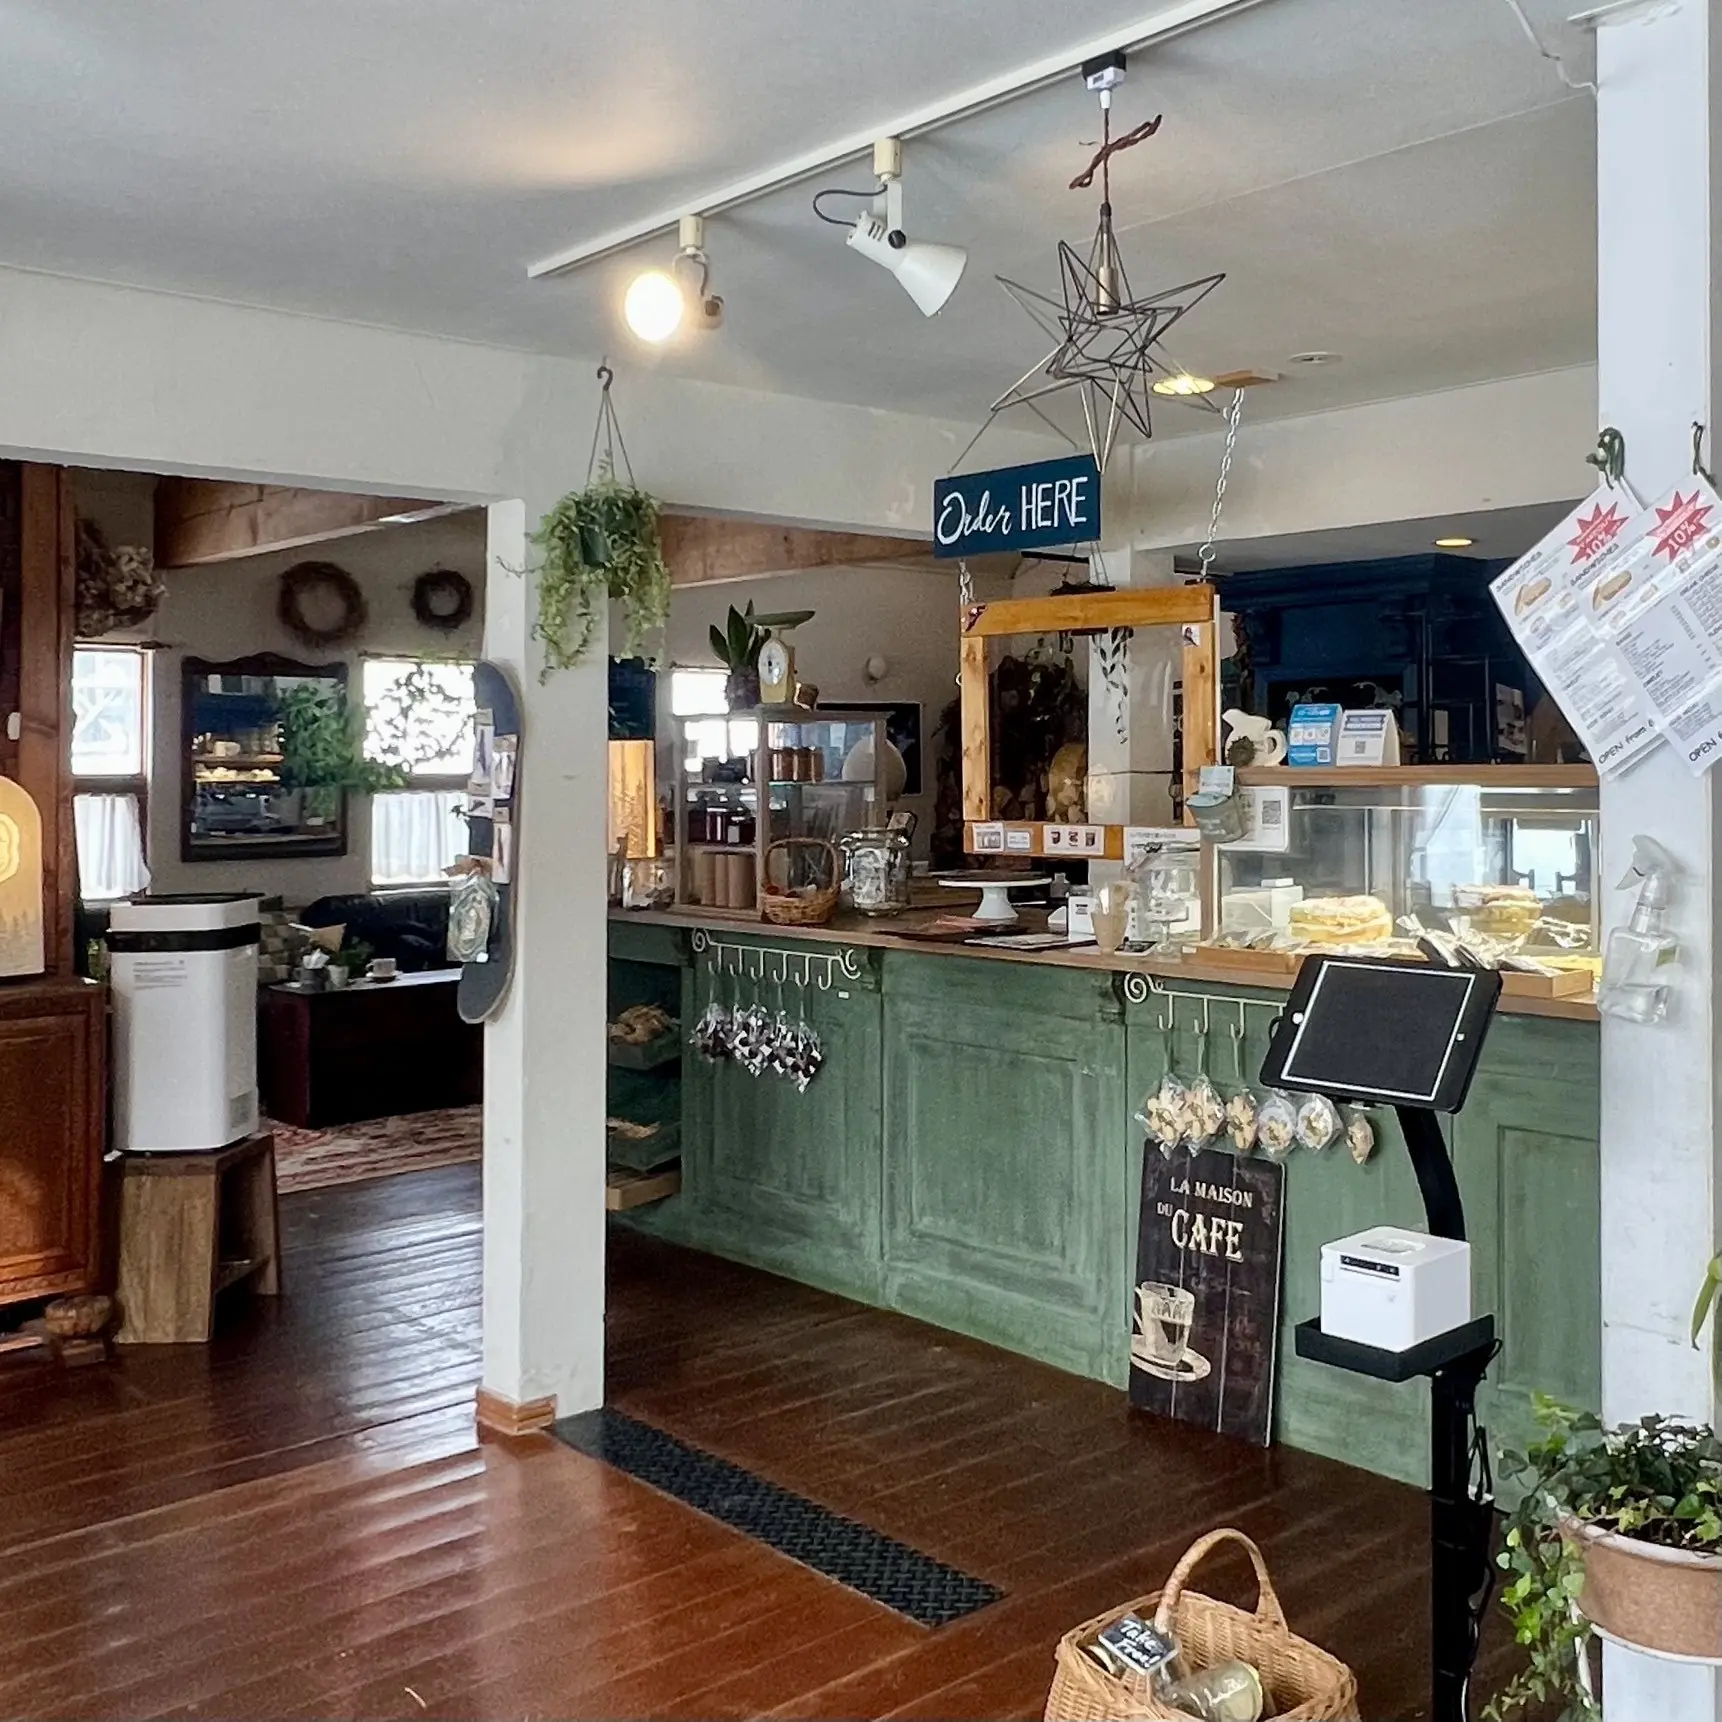 ニセコのカフェ「おやつとサンドイッチのお店 グラウビュンデン」店内